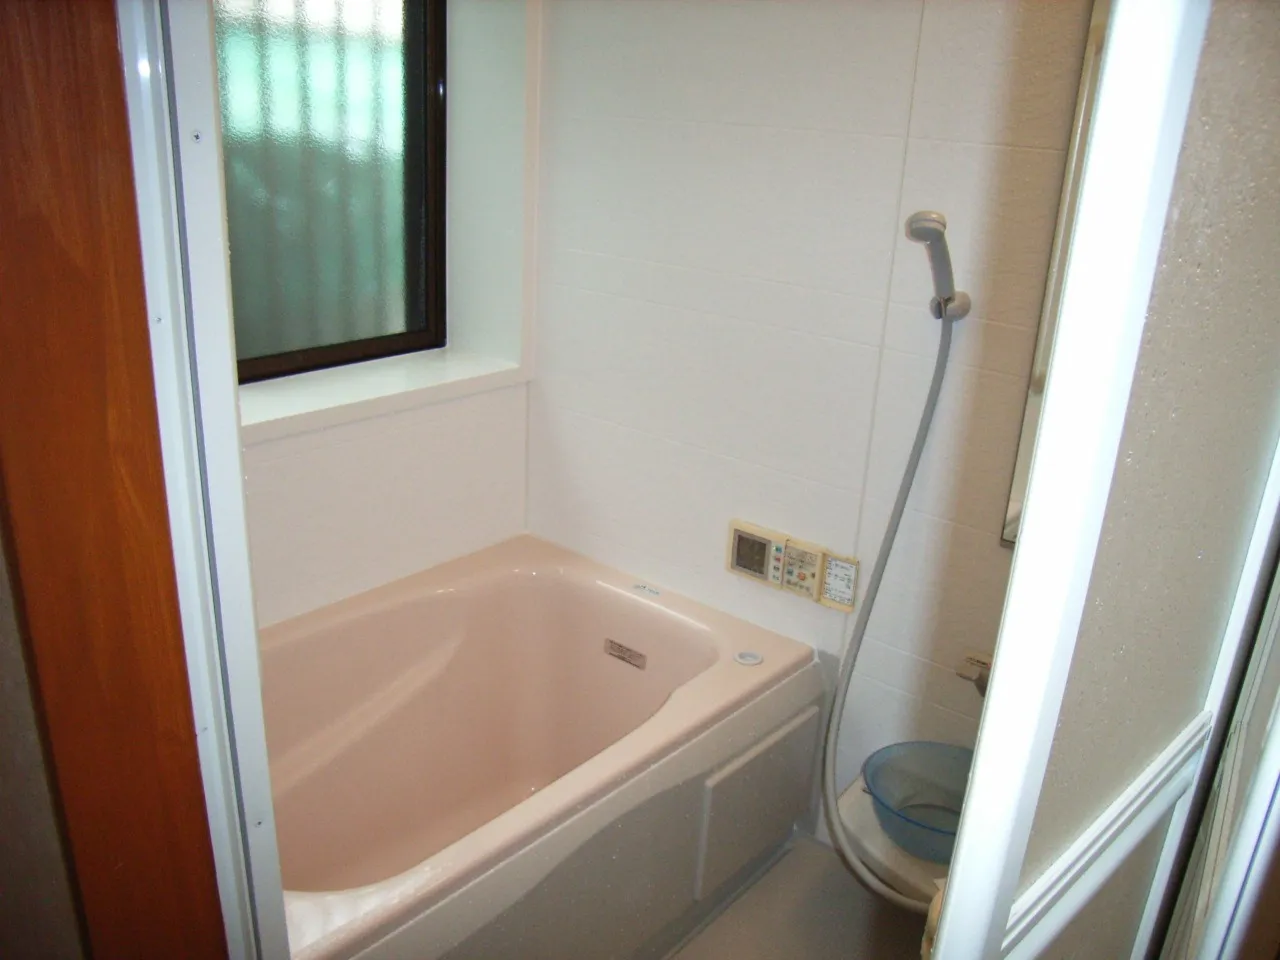 川崎市中原区にあるK様邸で在来工法の浴室をユニットバスに変更したリフォーム工事です